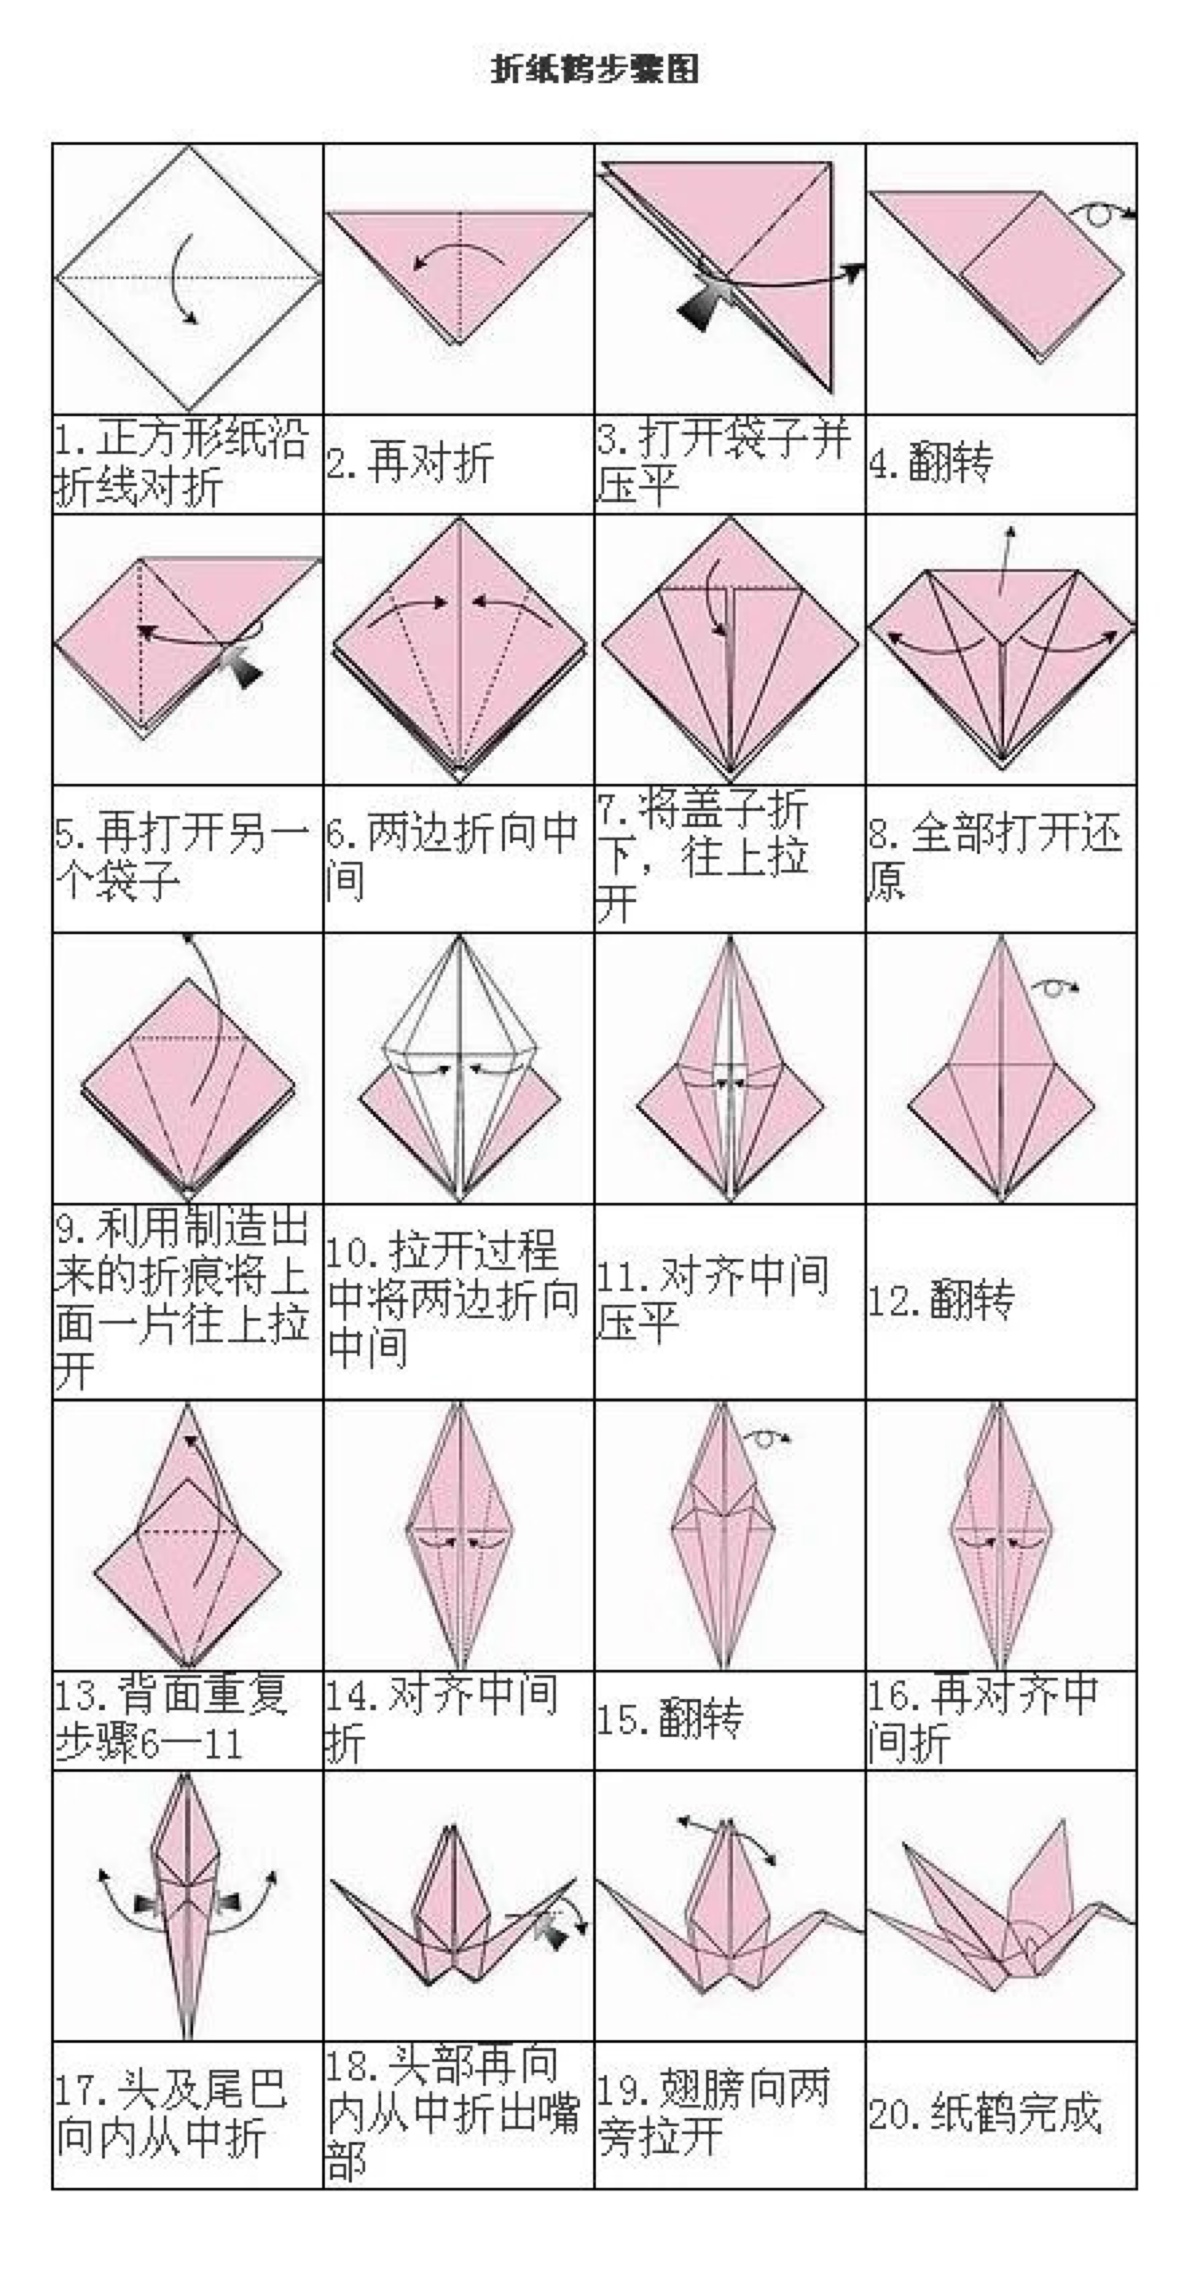 五尾千纸鹤的折法图解图片